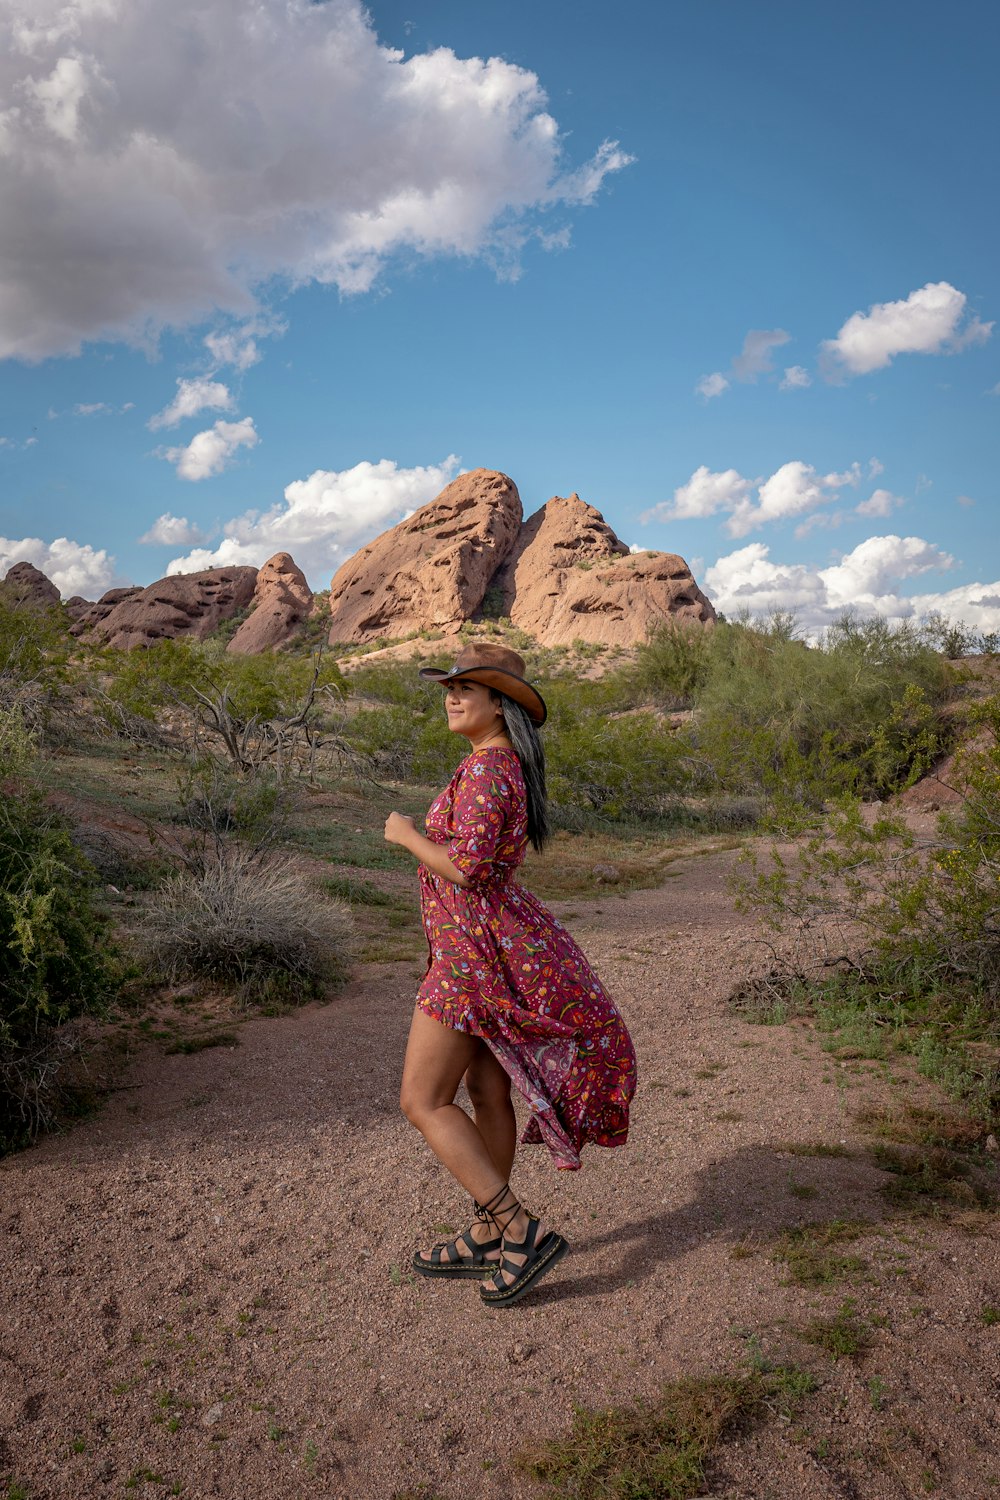 ドレスと帽子をかぶった女性が砂漠を歩いている